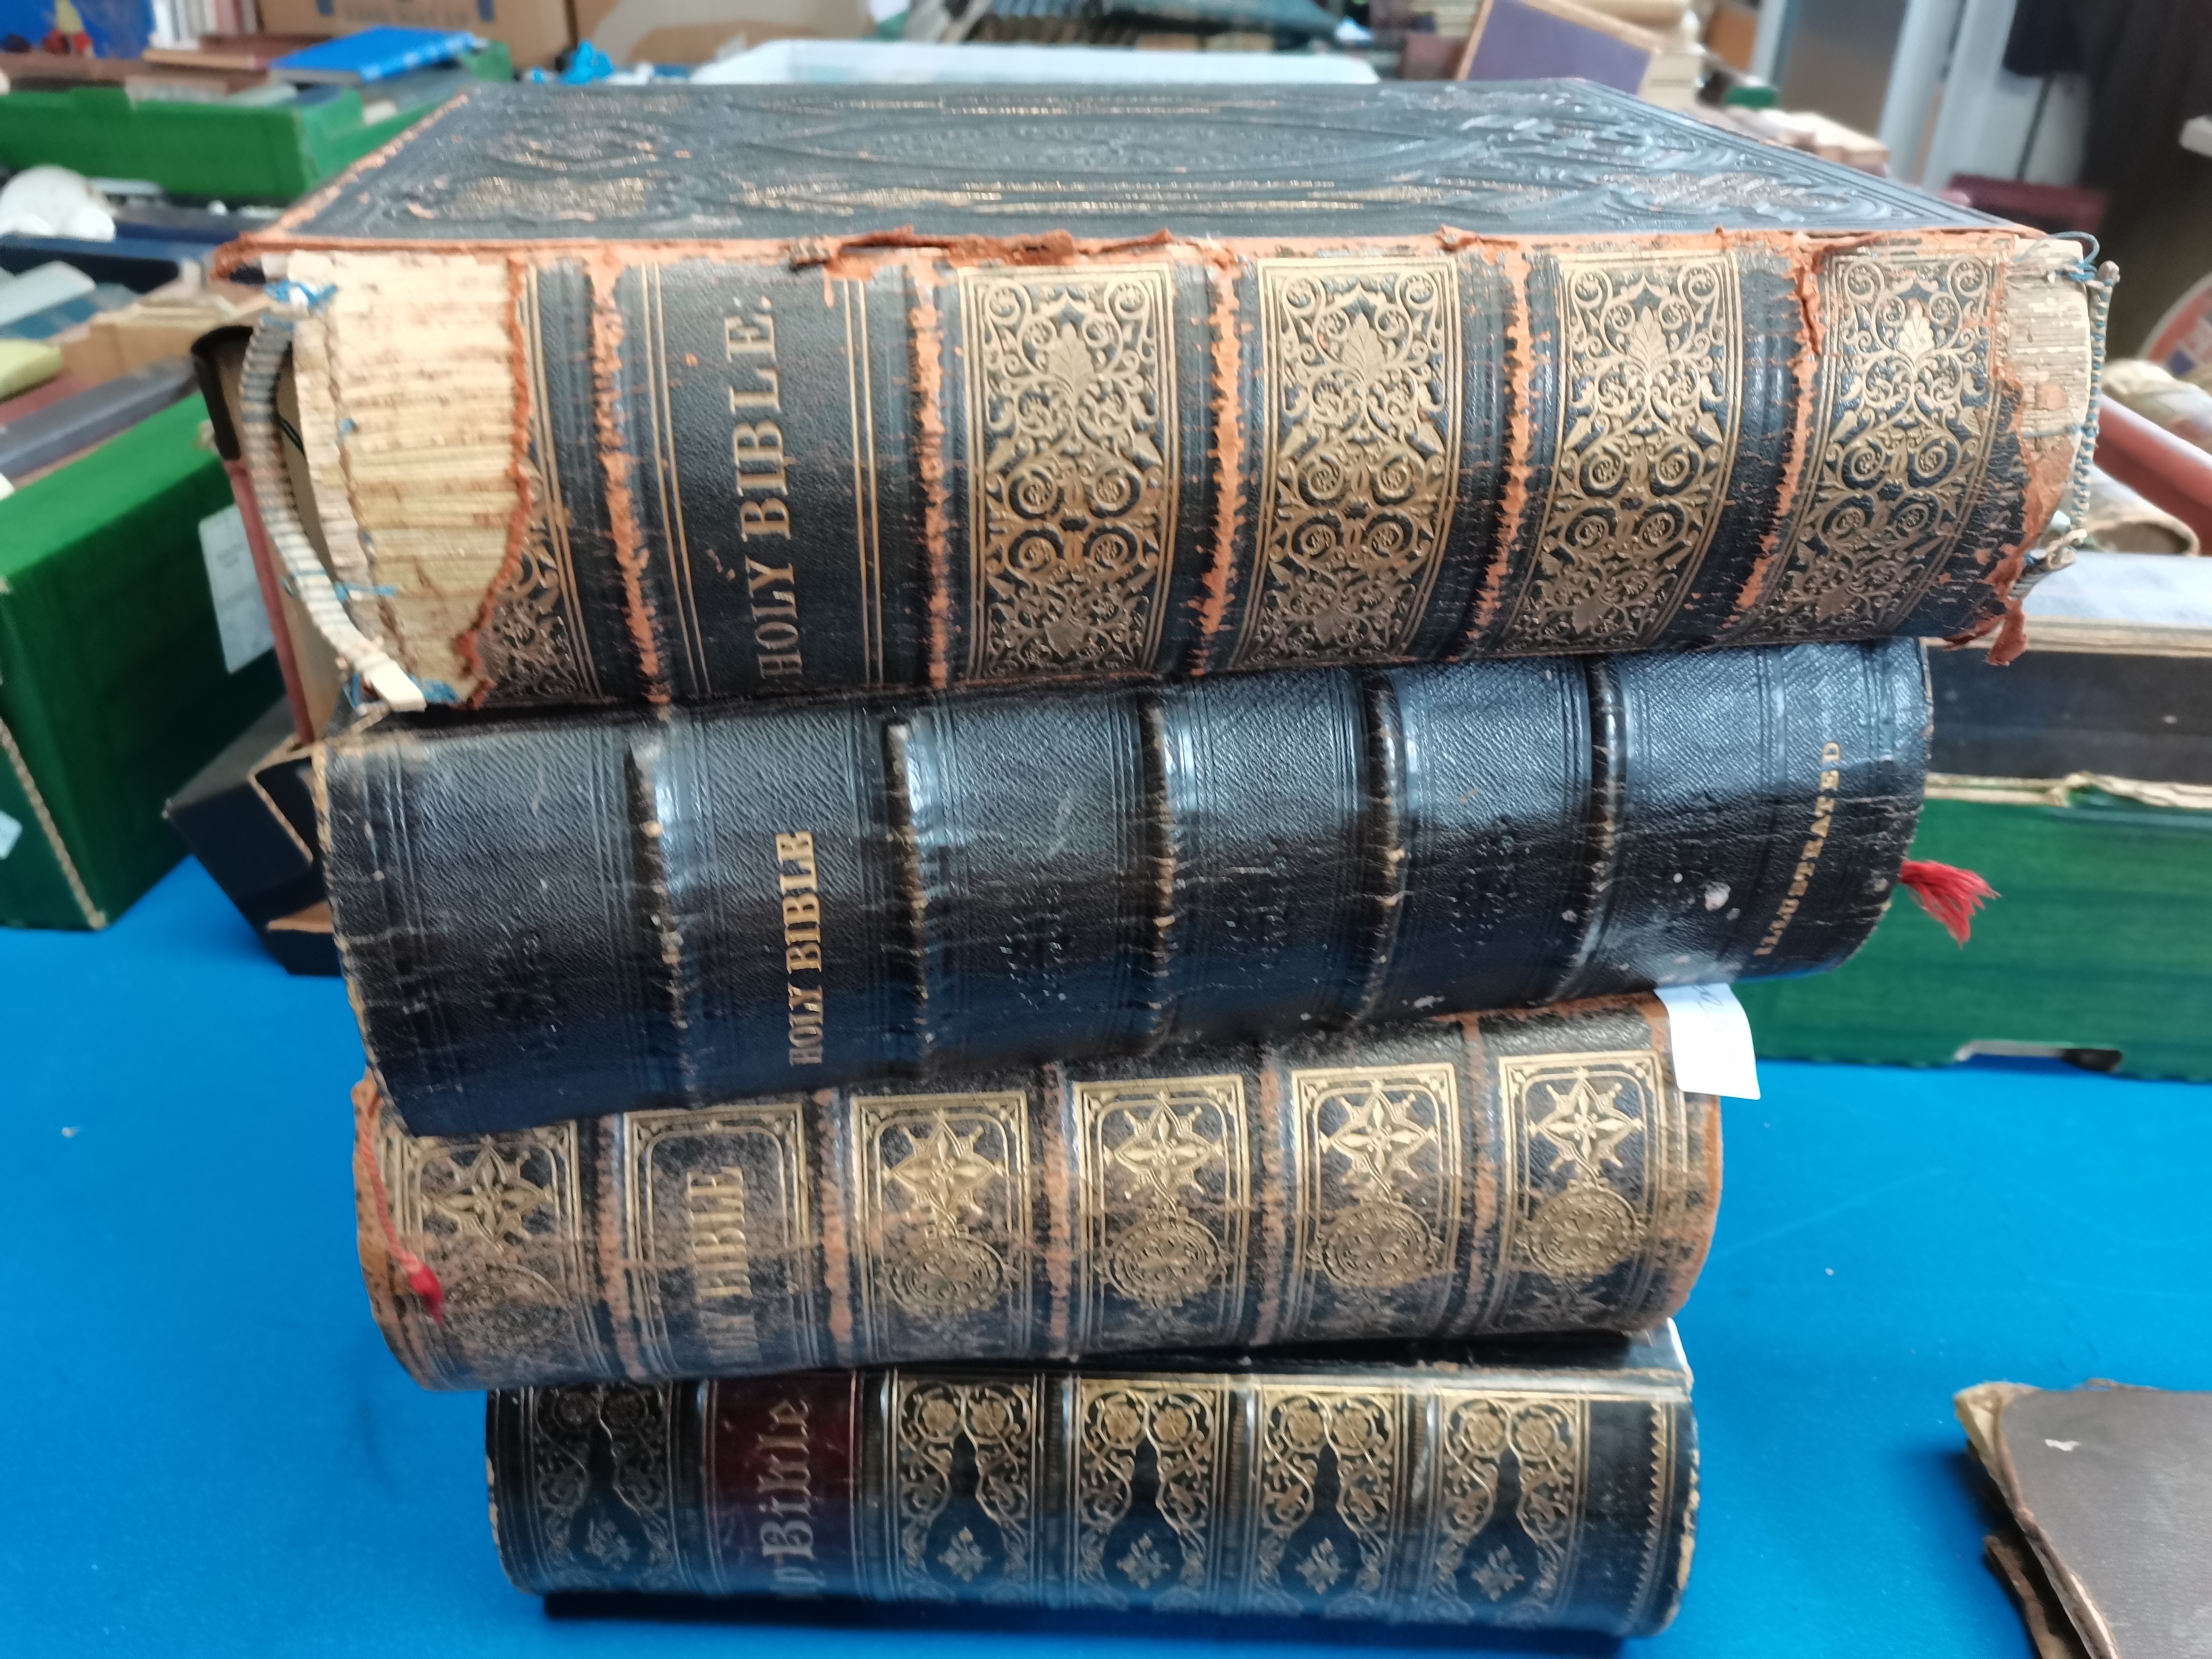 4 x vintage bibles